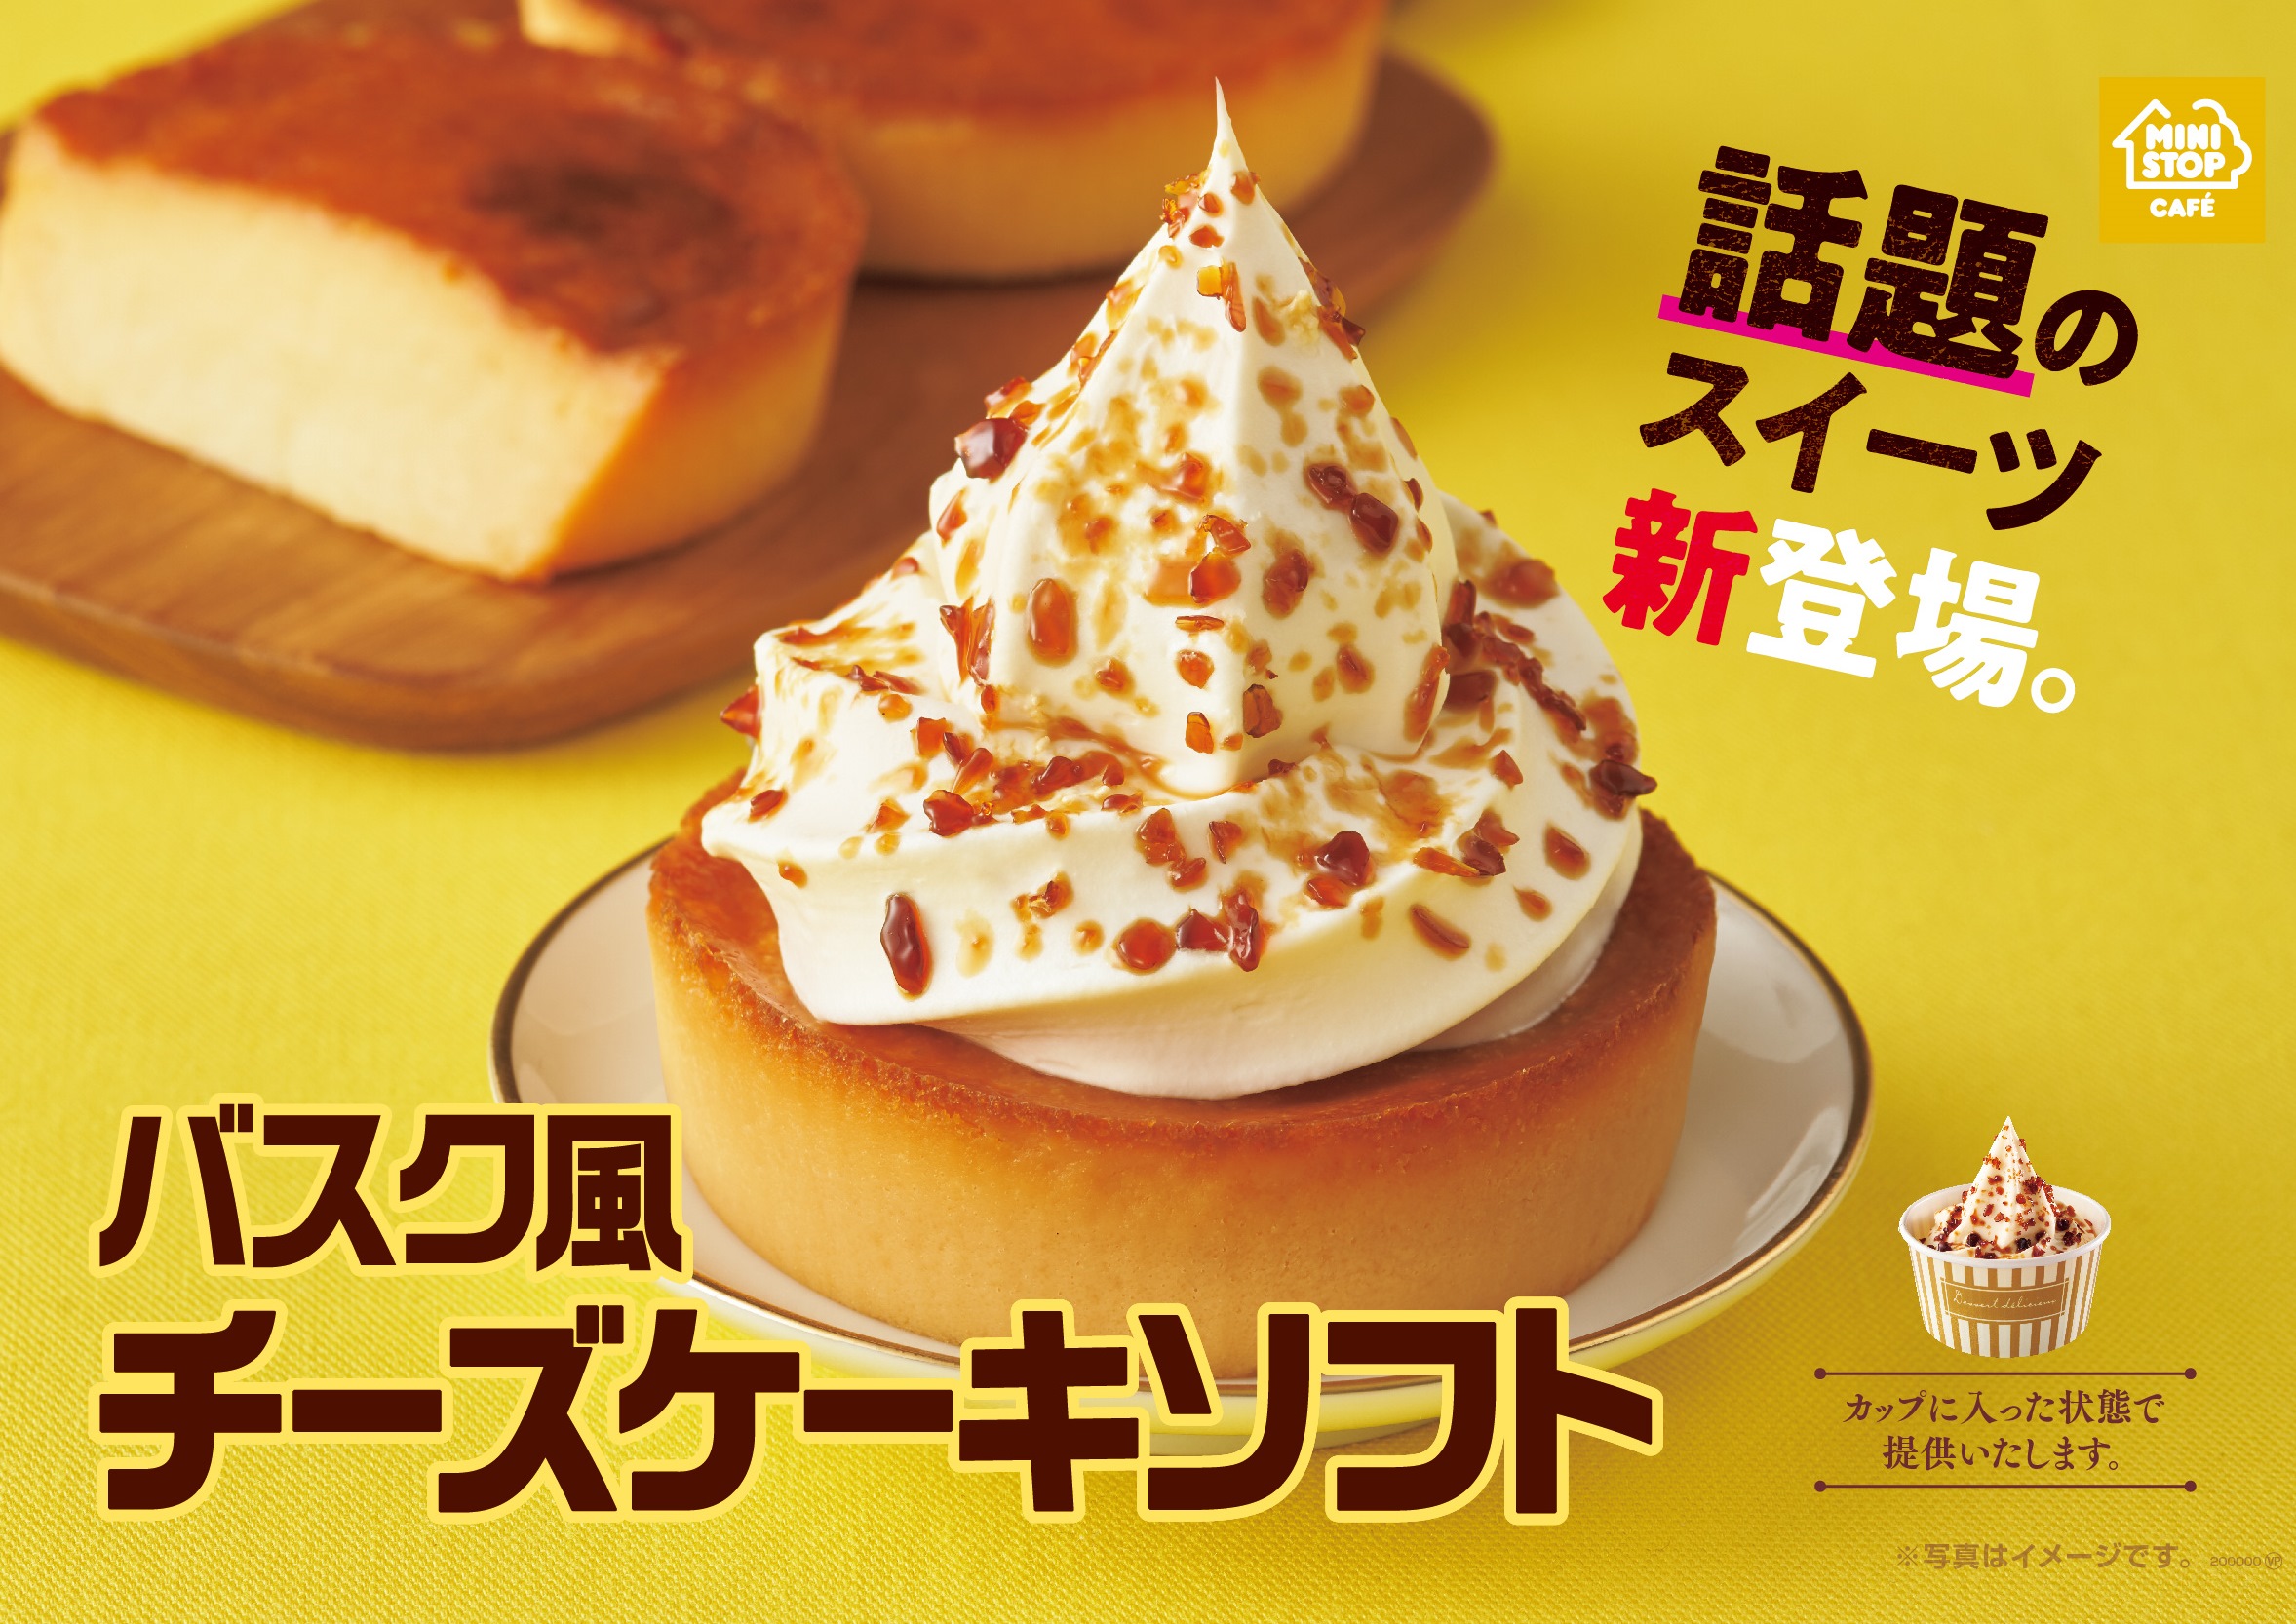 濃厚チーズケーキとソフトクリームが相性抜群😻ミニストップ「バスク風チーズケーキソフト」1月24日(金)発売🧀🧡🌟